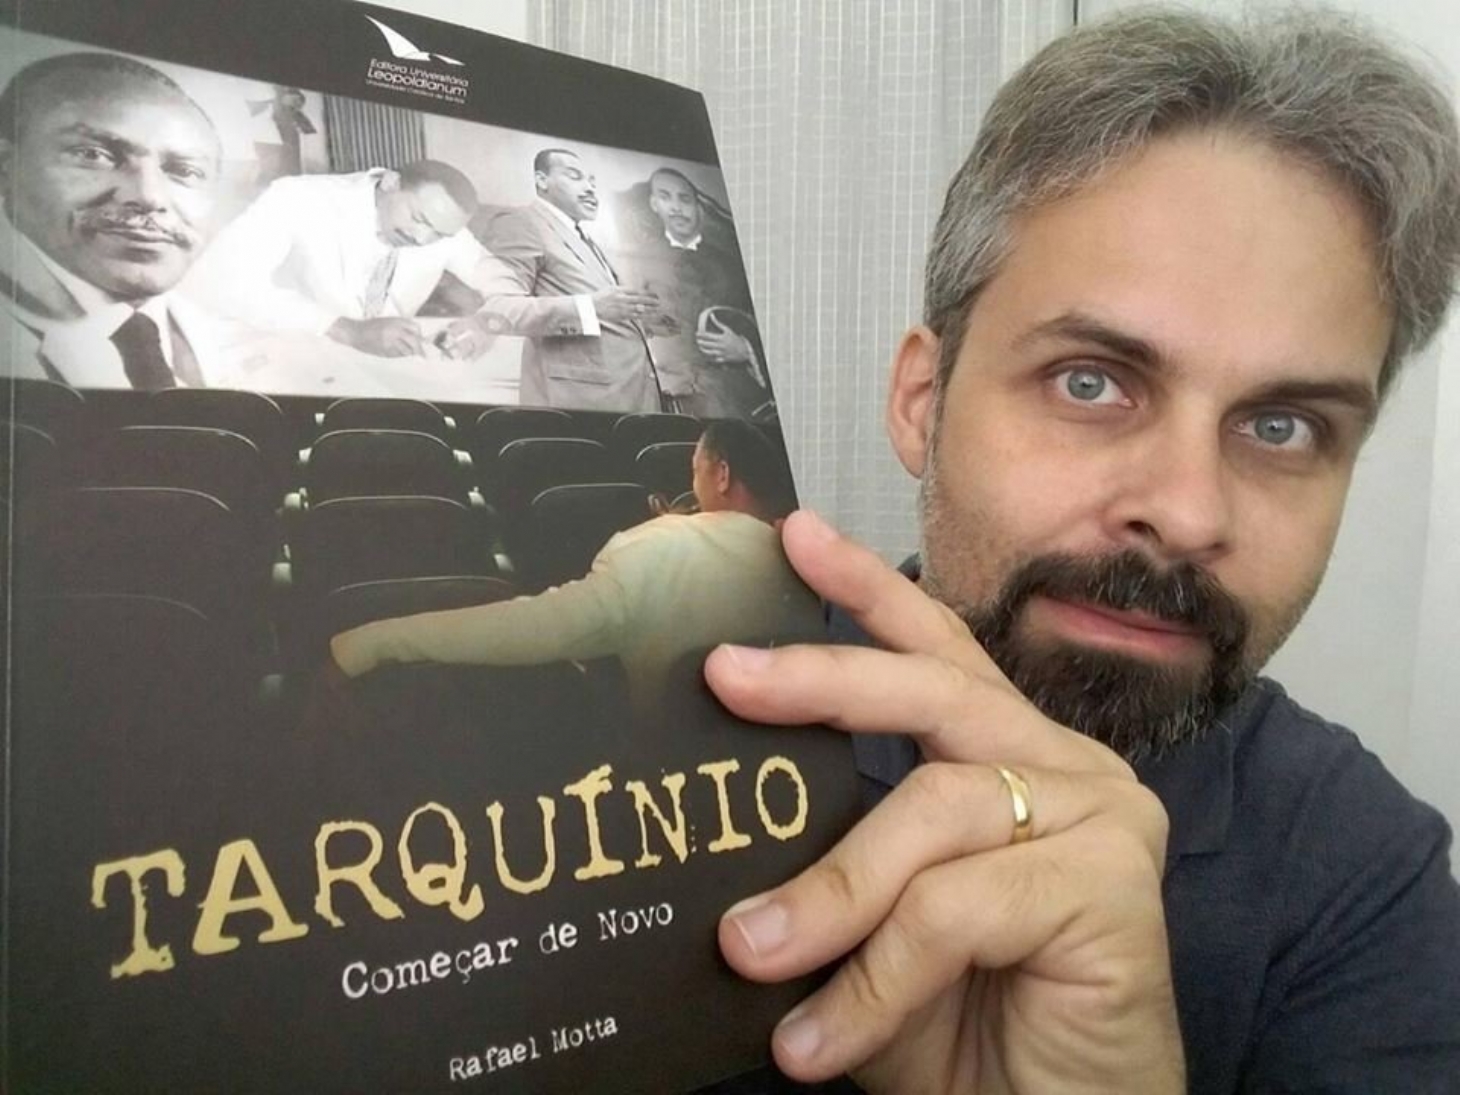 Jornalista relembra trajetória marcante de Esmeraldo Tarquínio | Jornal da Orla